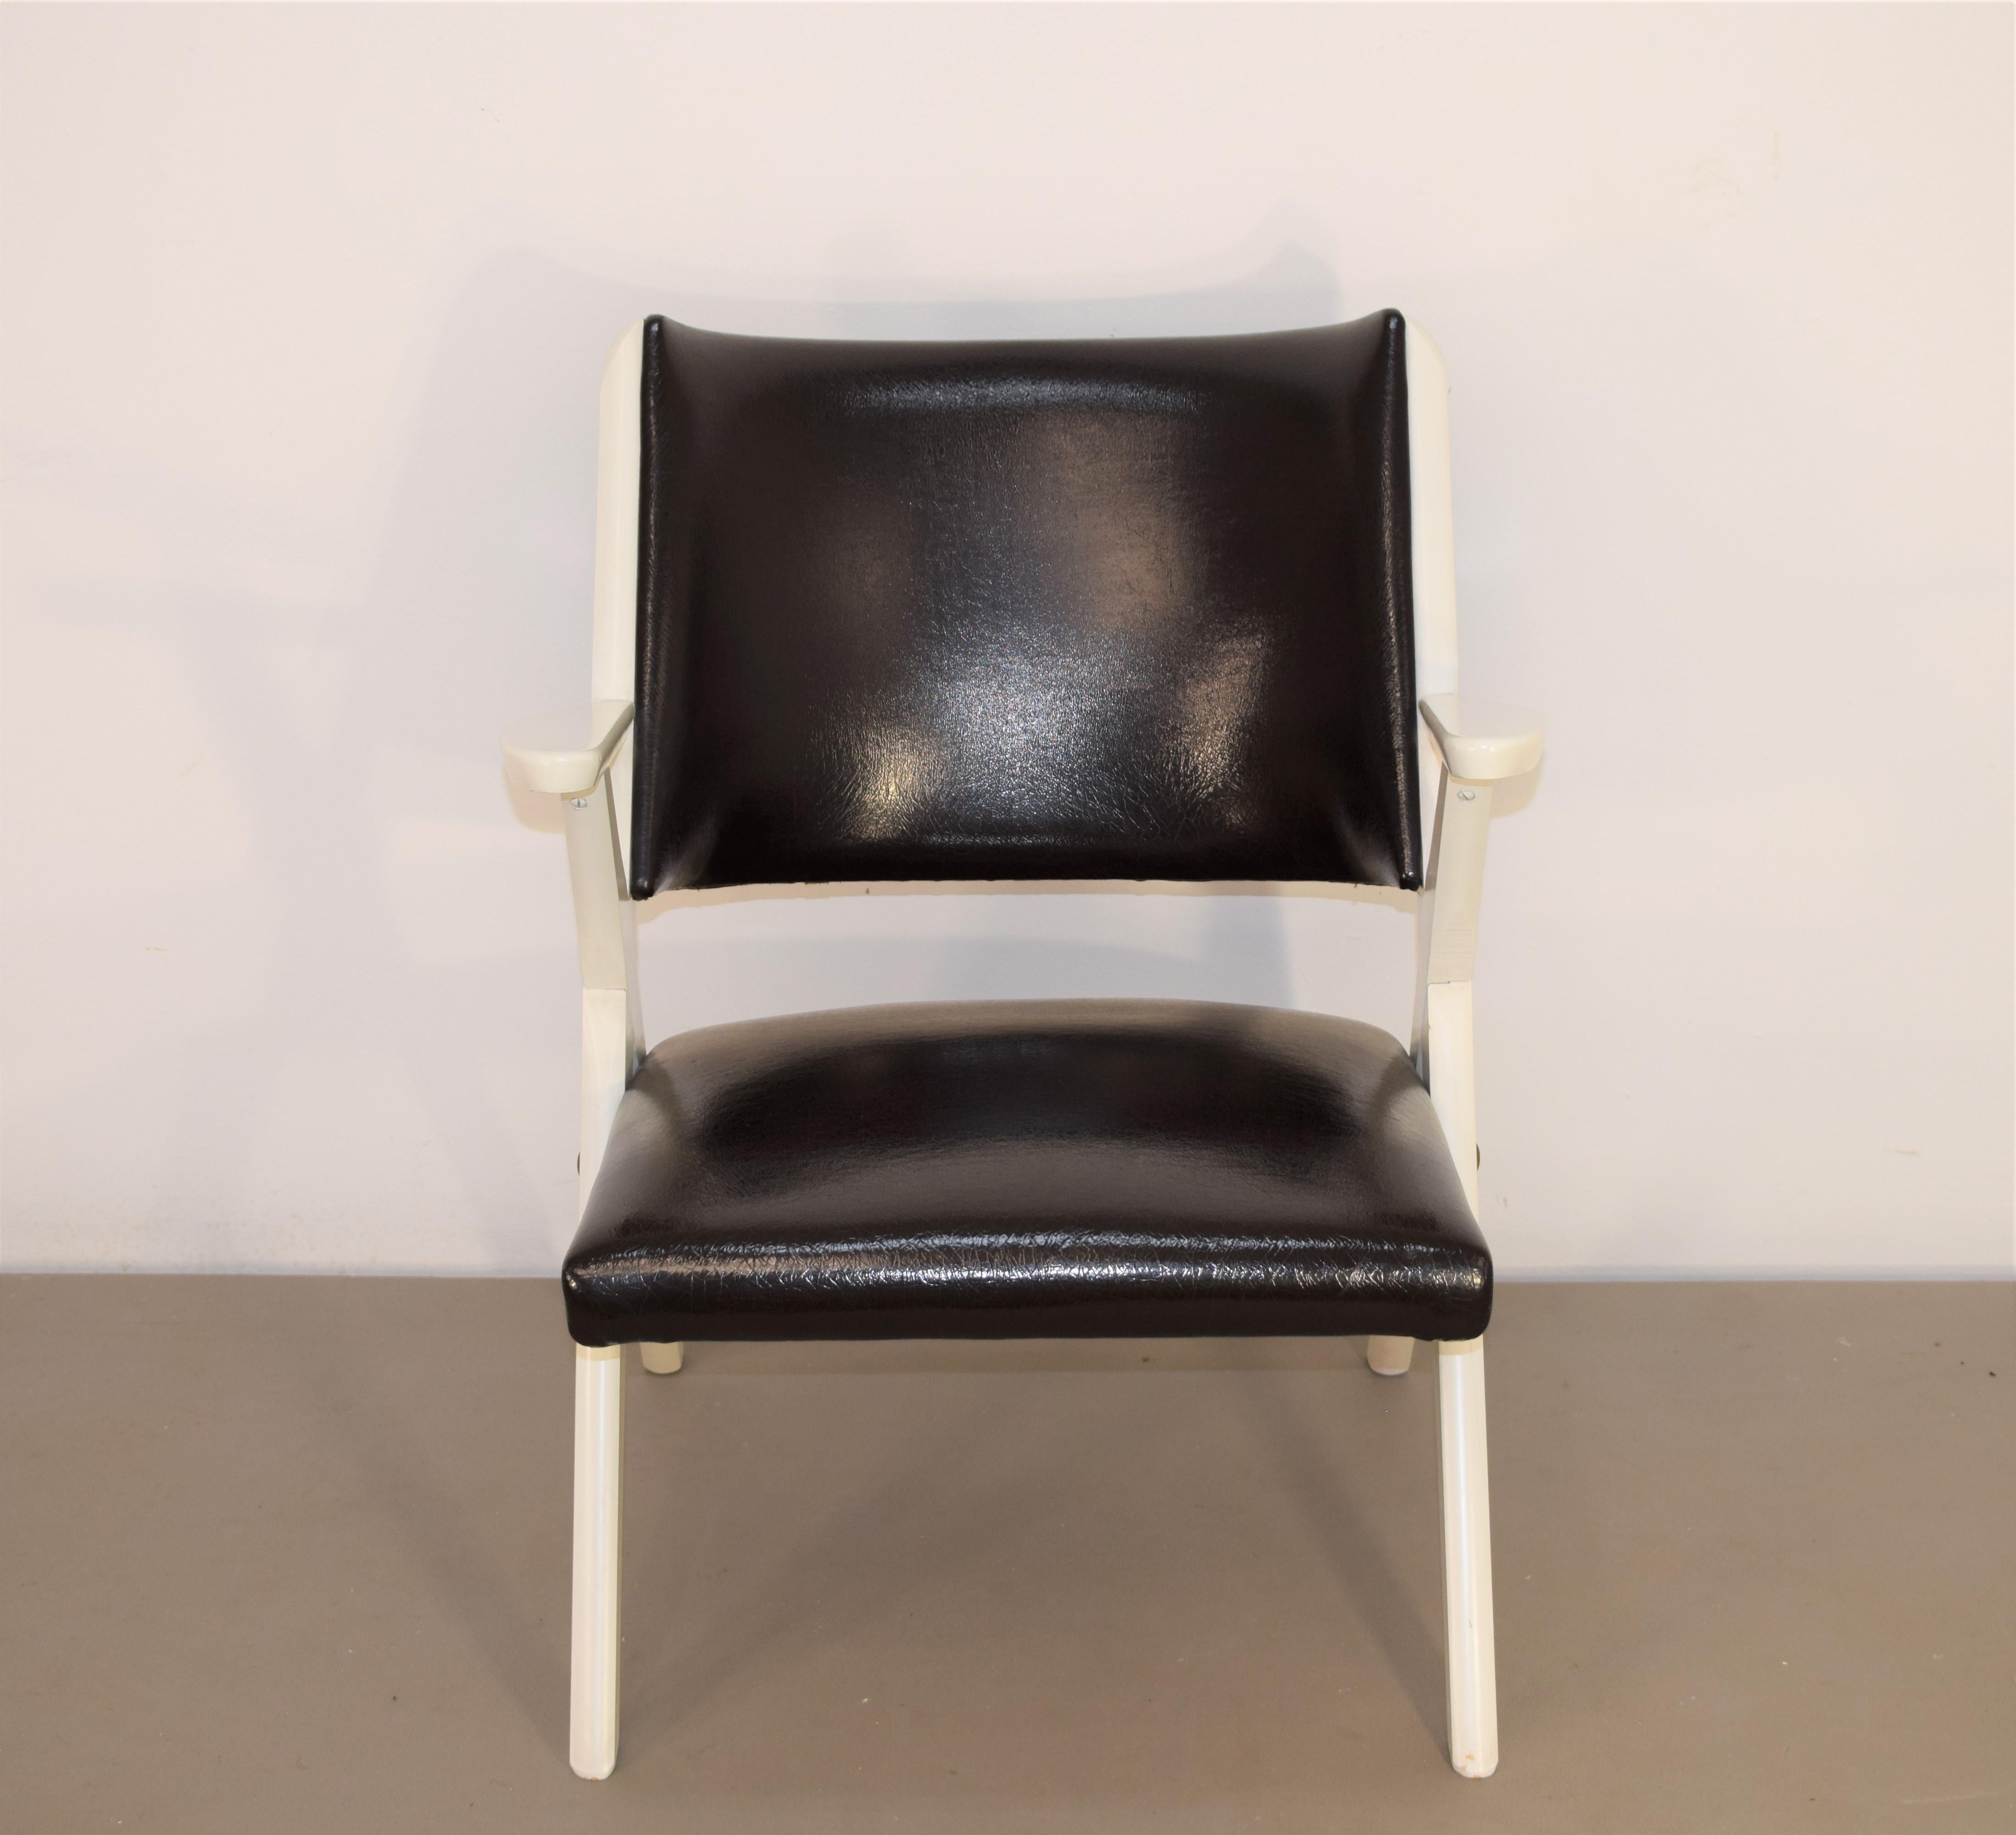 Satz von 2 italienischen Sesseln von Dal Vera, 1950er Jahre
Abmessungen: H= 74 cm; H-Sitz= 38 cm; B= 58 cm; T= 64 cm.